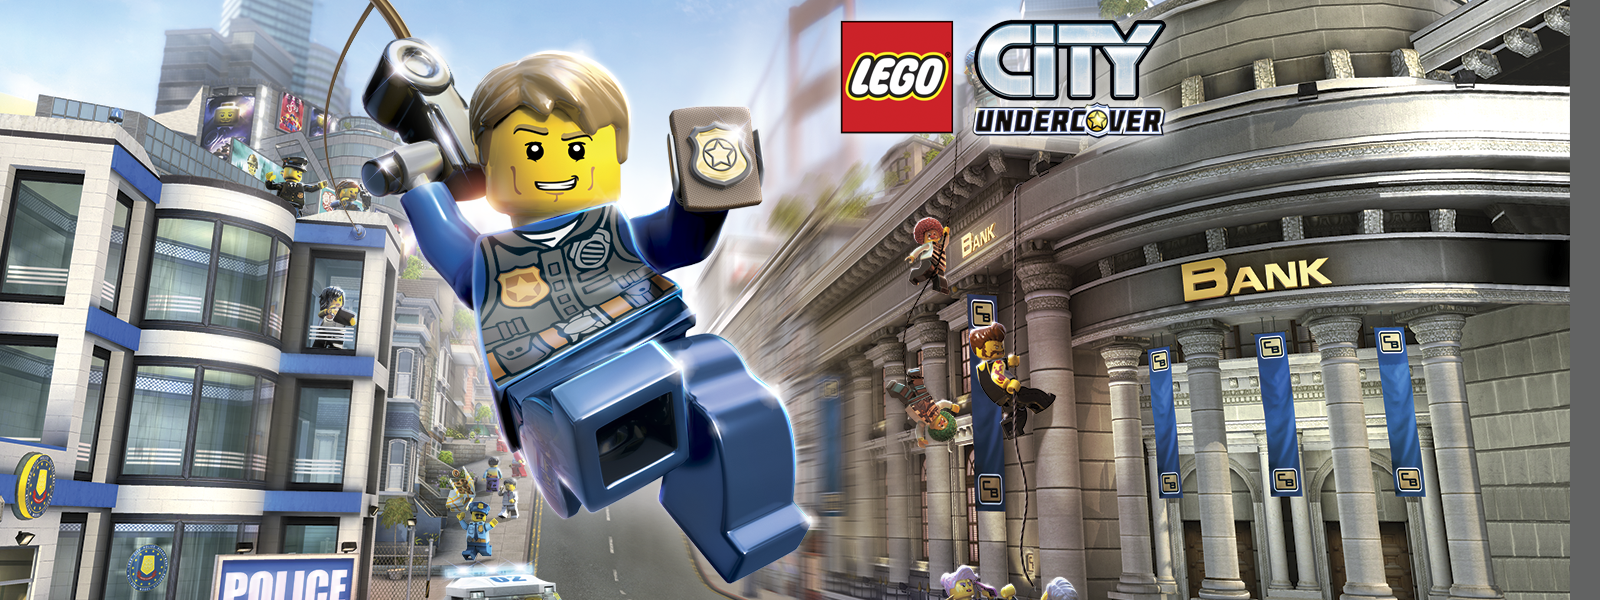 Lego city undercover. Lego city undercover, Lego city, Lego humor